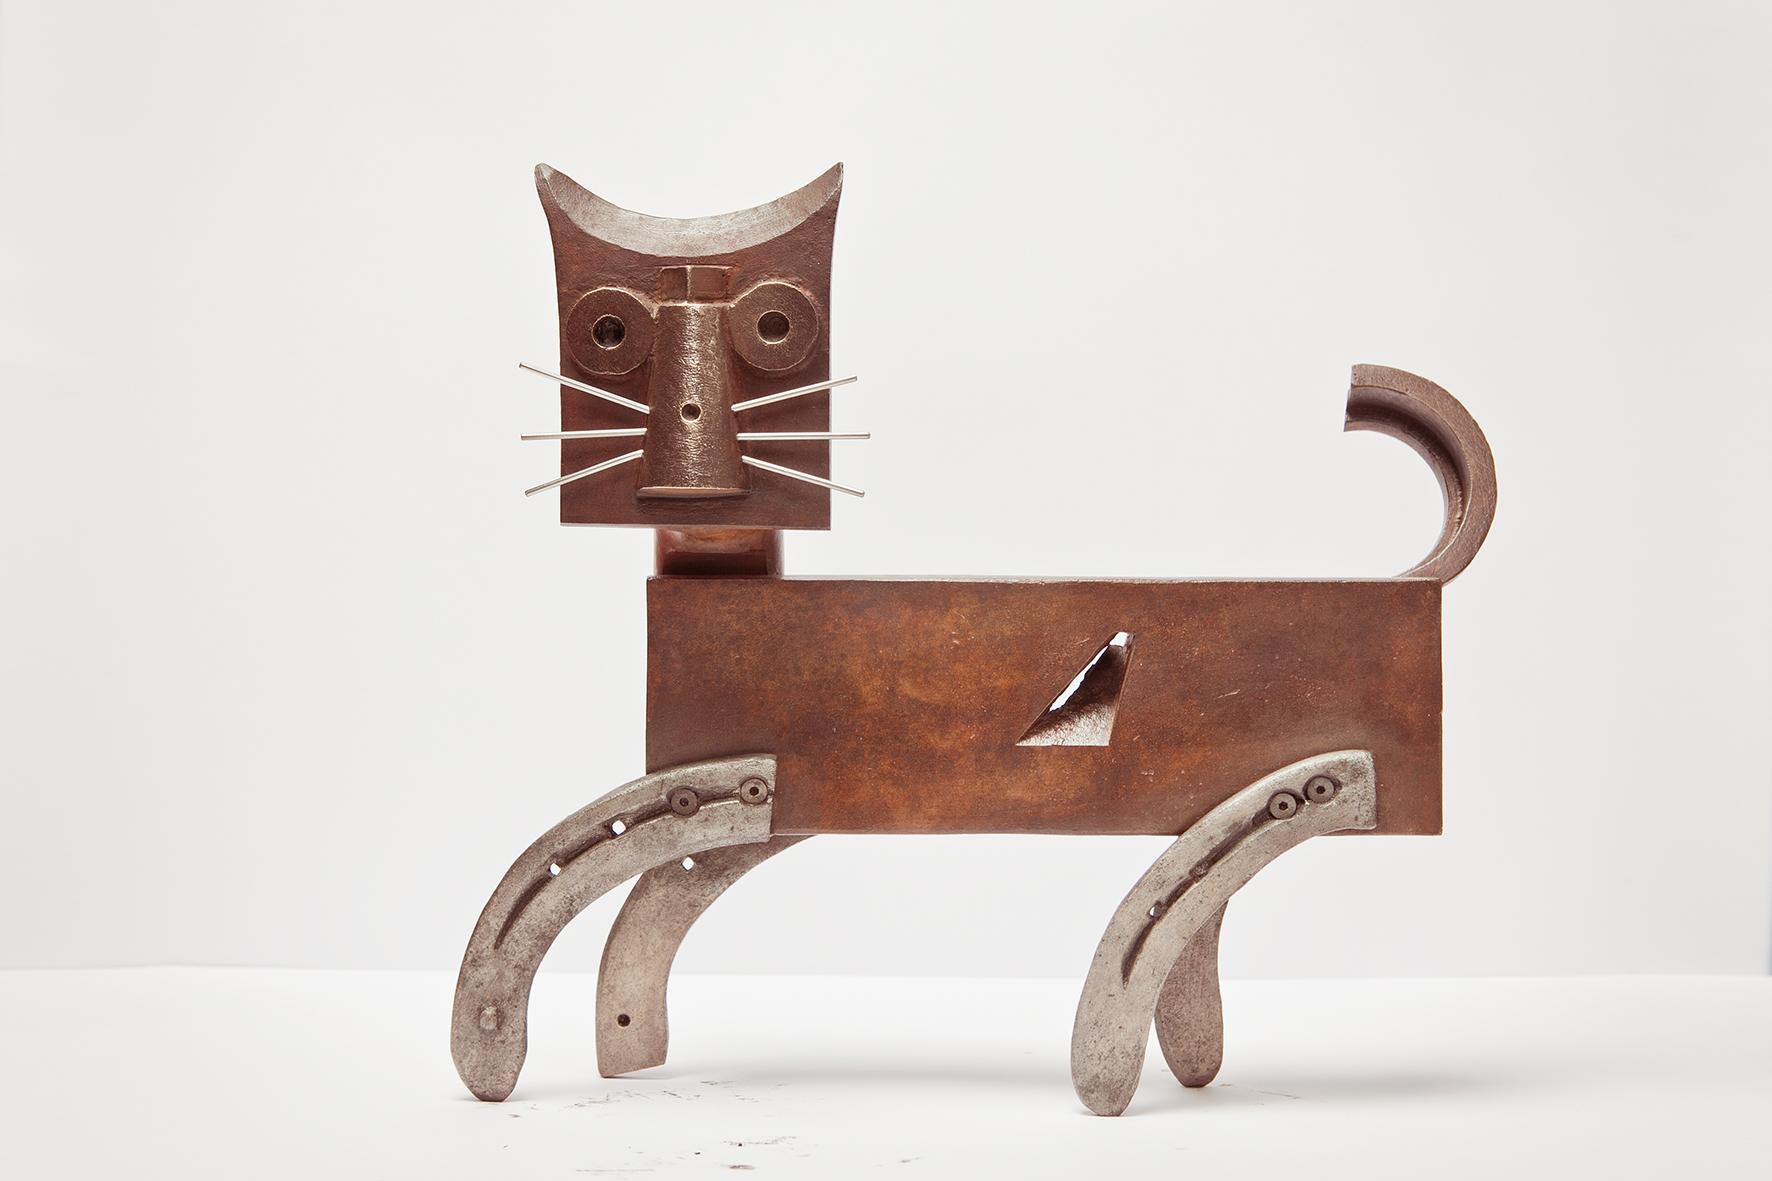 Miquel Aparici Figurative Sculpture - Gato De Bronce - 21st Century, Contemporary Sculpture, Figurative, Bronze, Cat